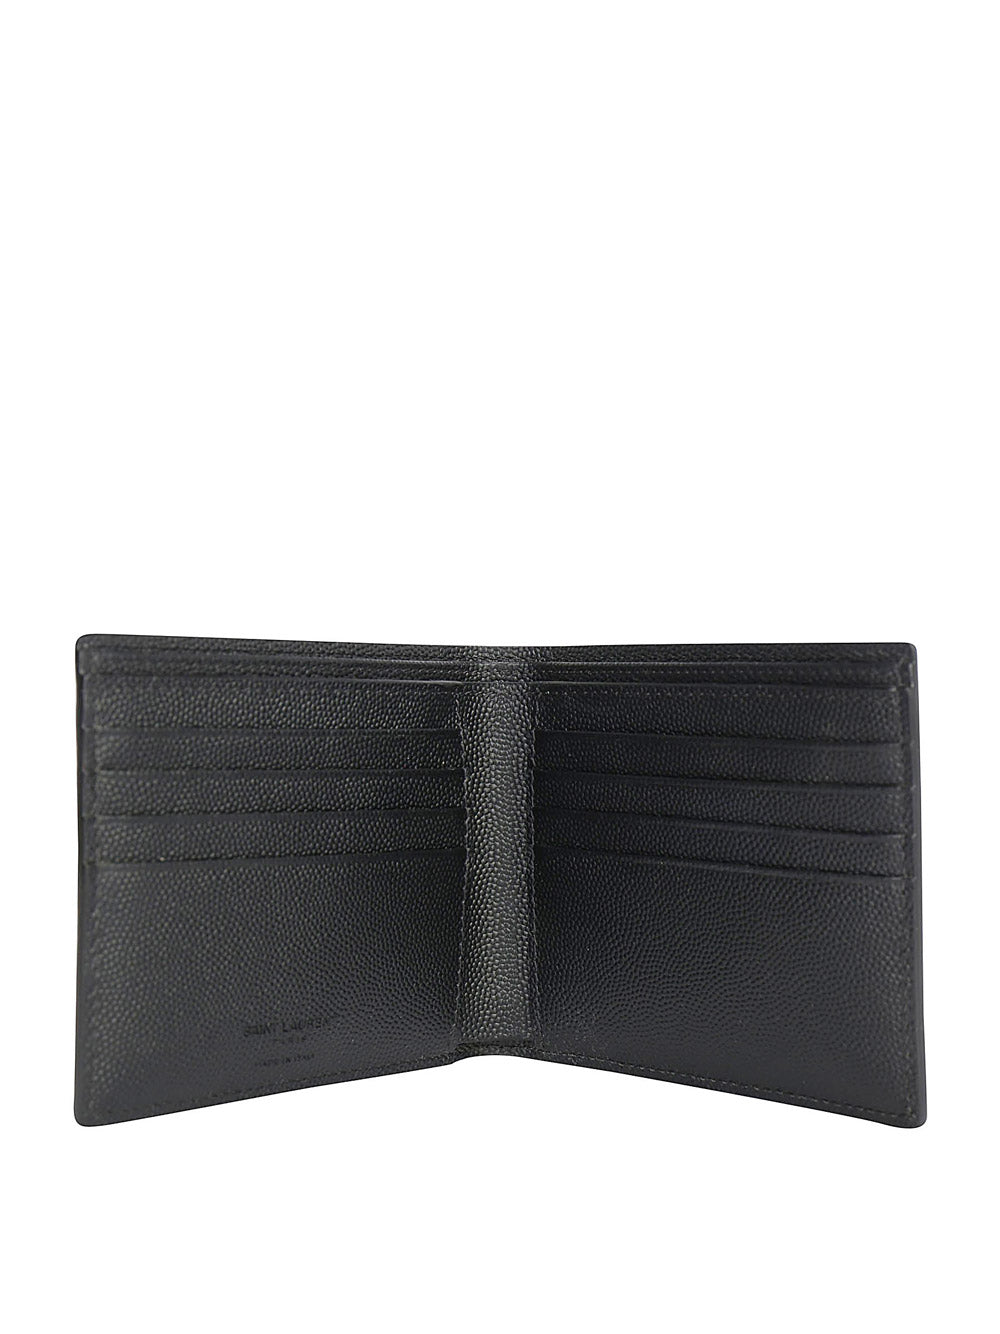 East/West Wallet in Grain De Poudre Embossed Leather - Black